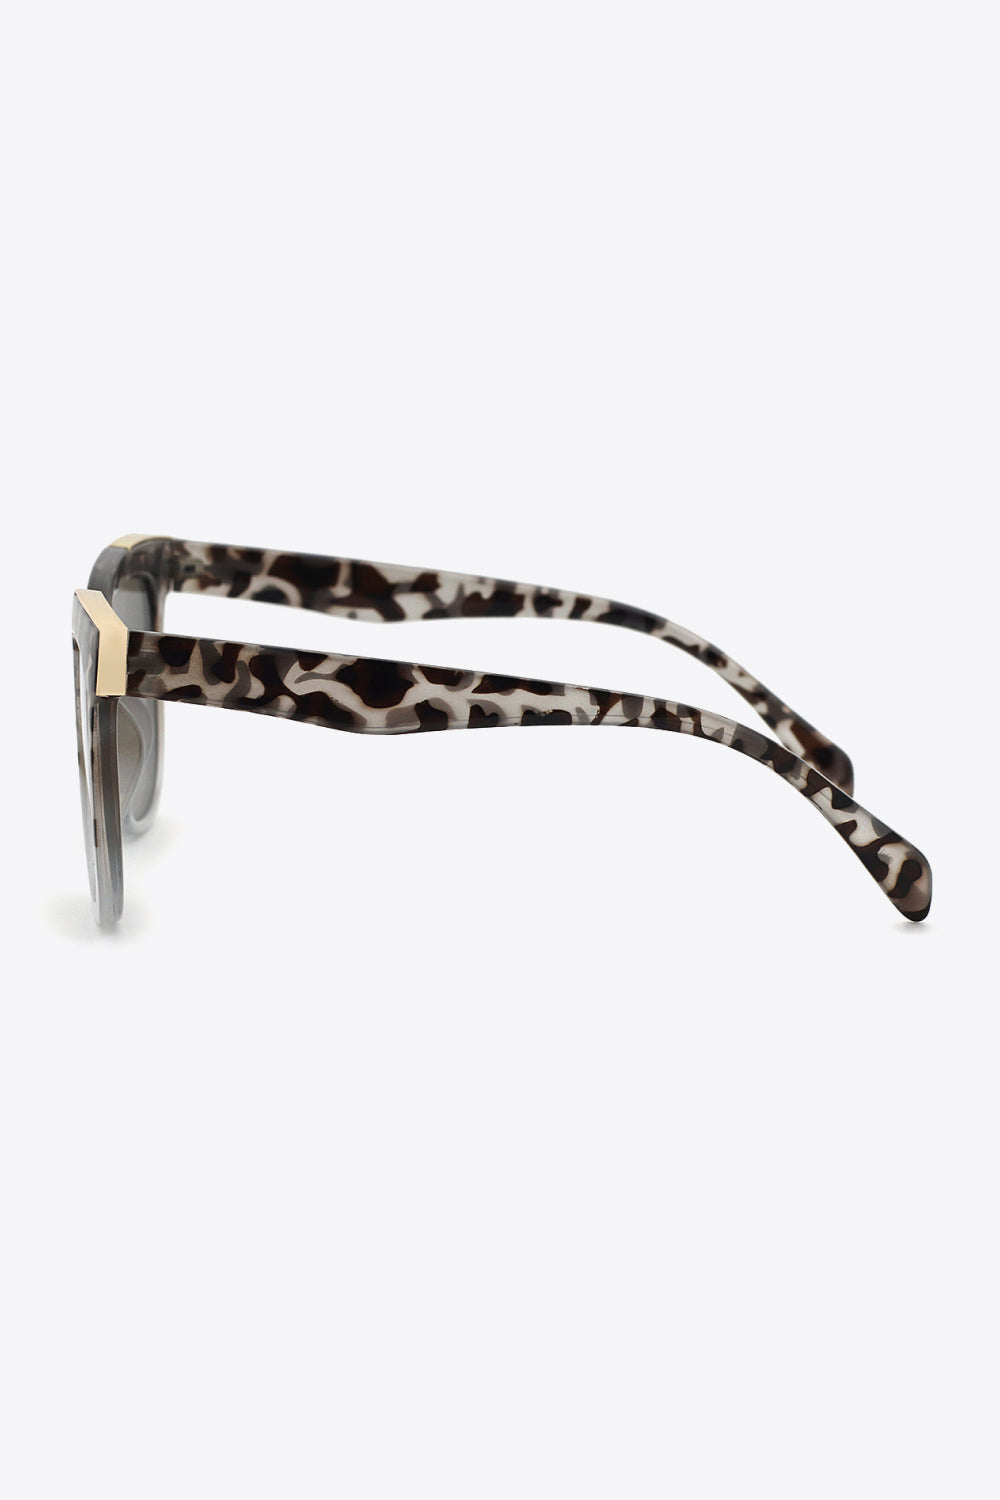 Women’s Tortoiseshell Polycarbonate Frame Full Rim Sunglasses